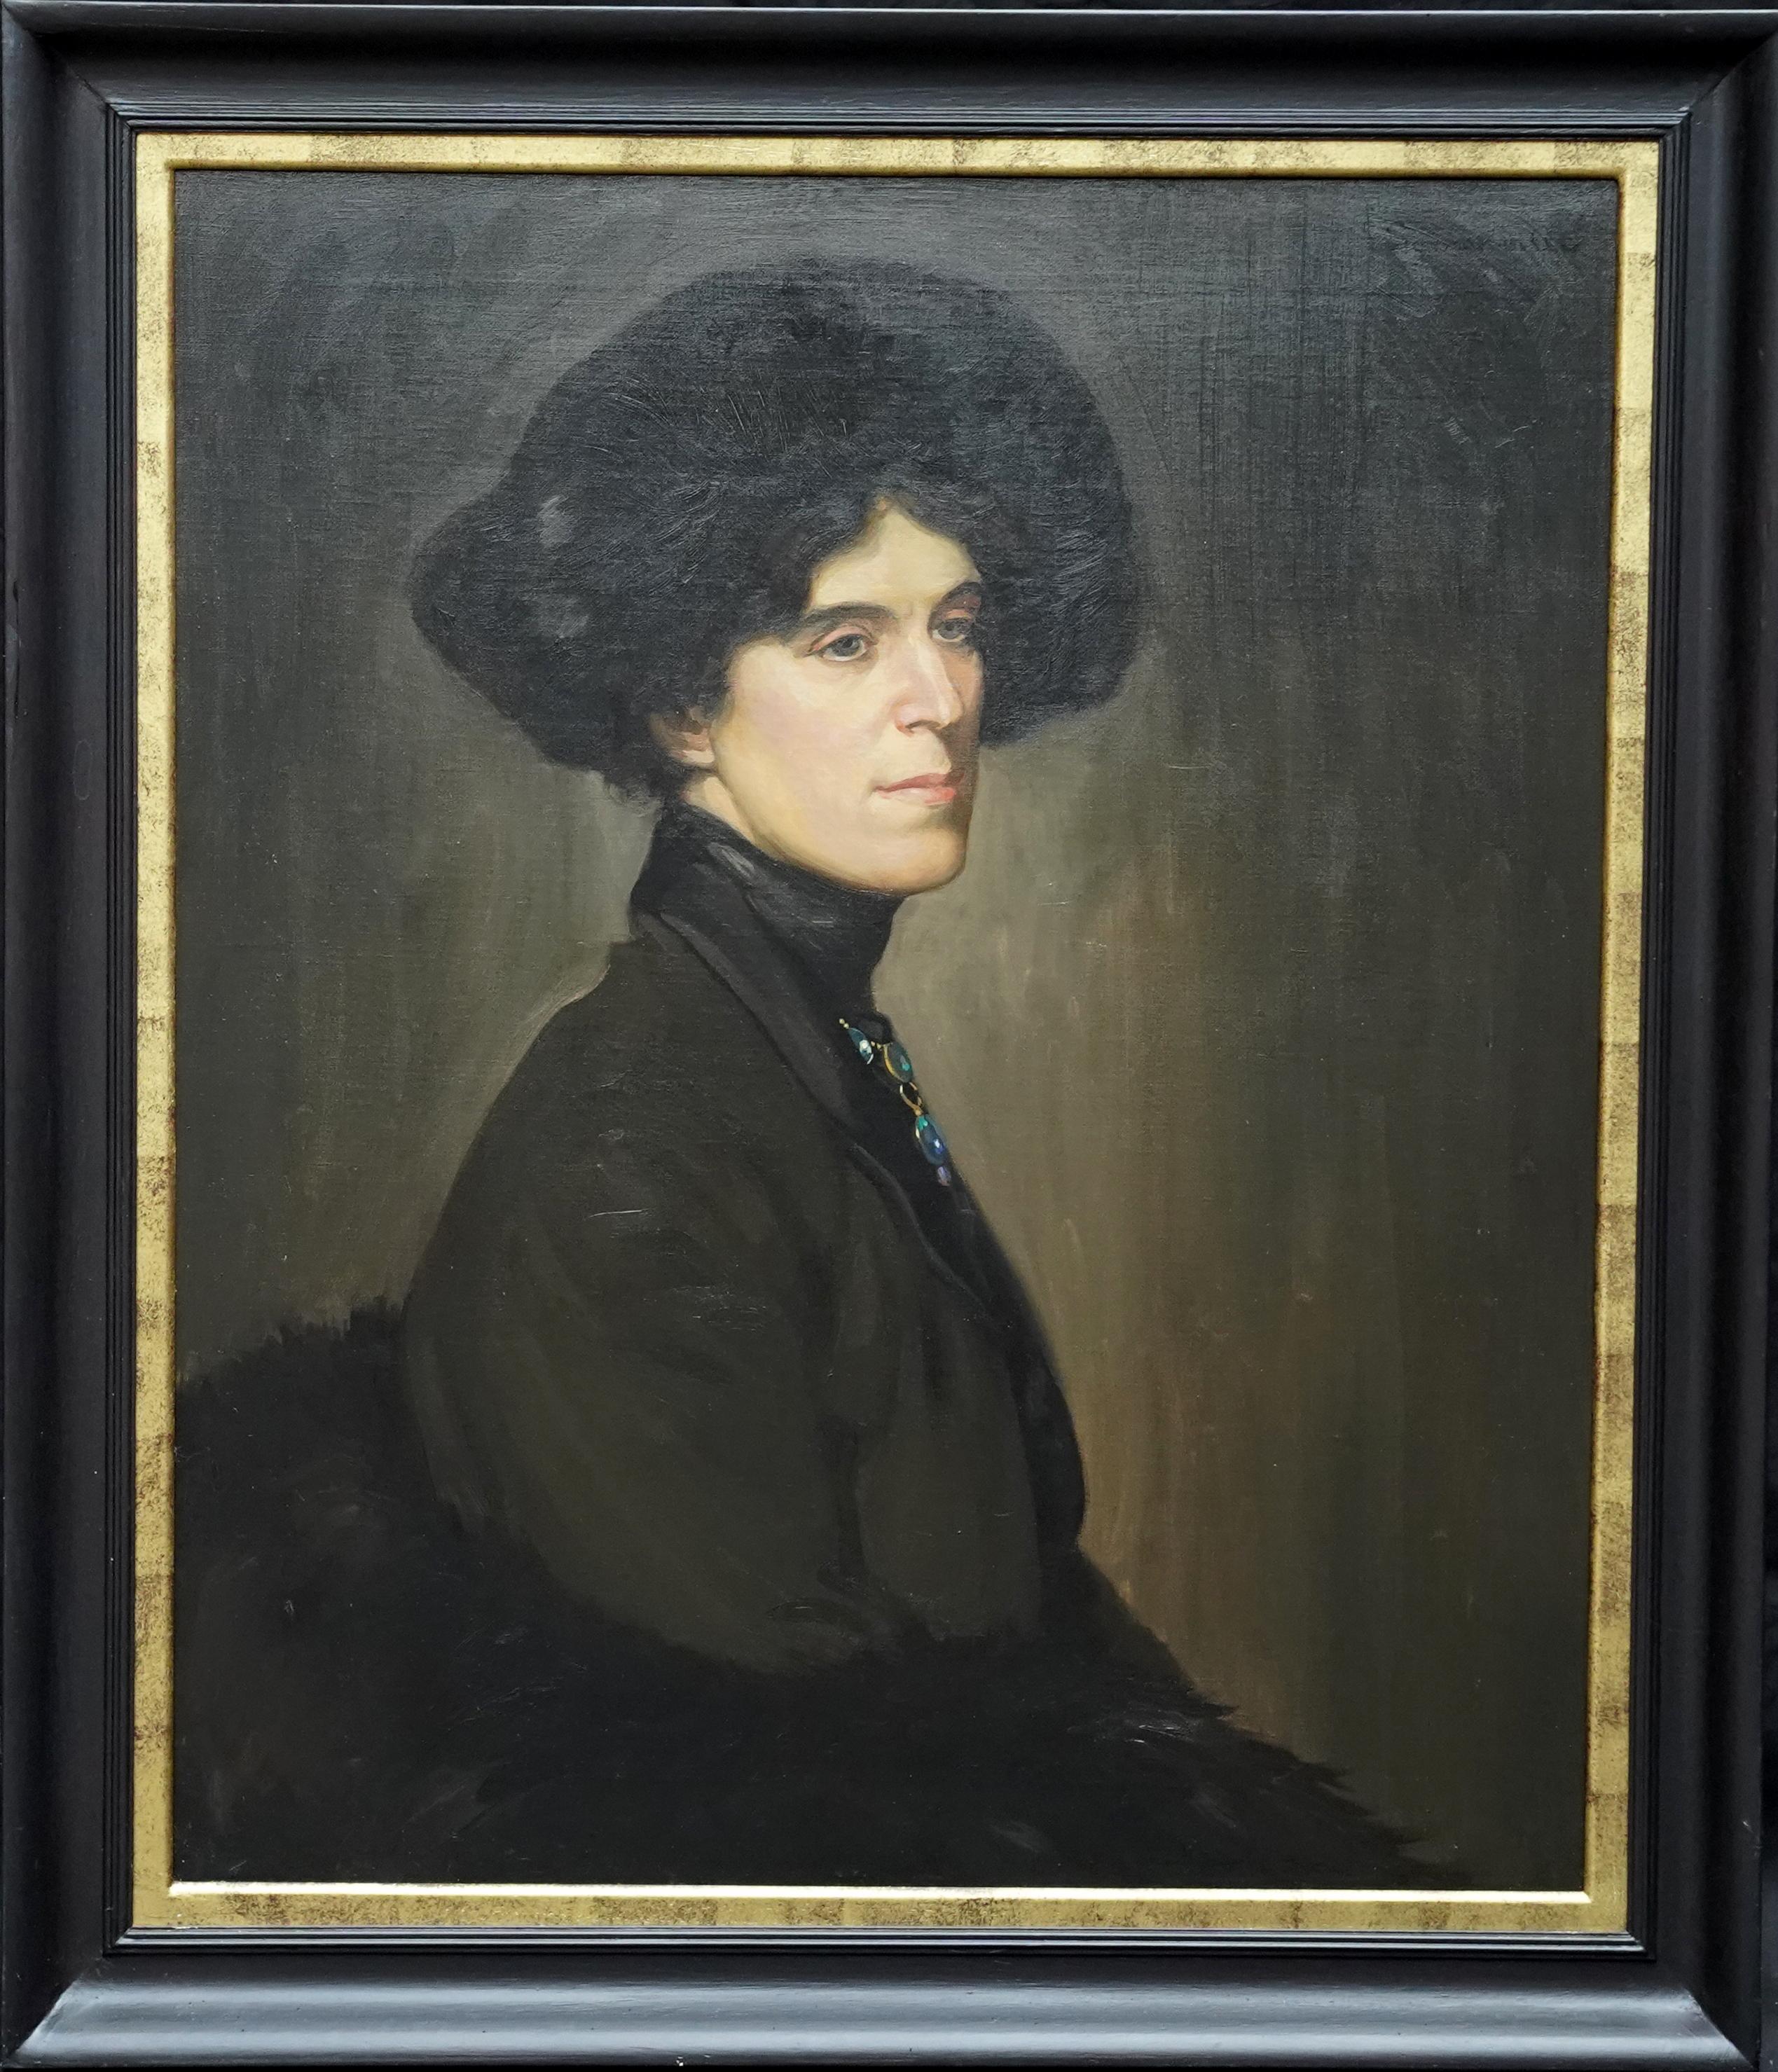 Portrait Painting Howard Somerville - Portrait de Blanche Stuchbury - Peinture à l'huile d'un portrait de l'art édouardien